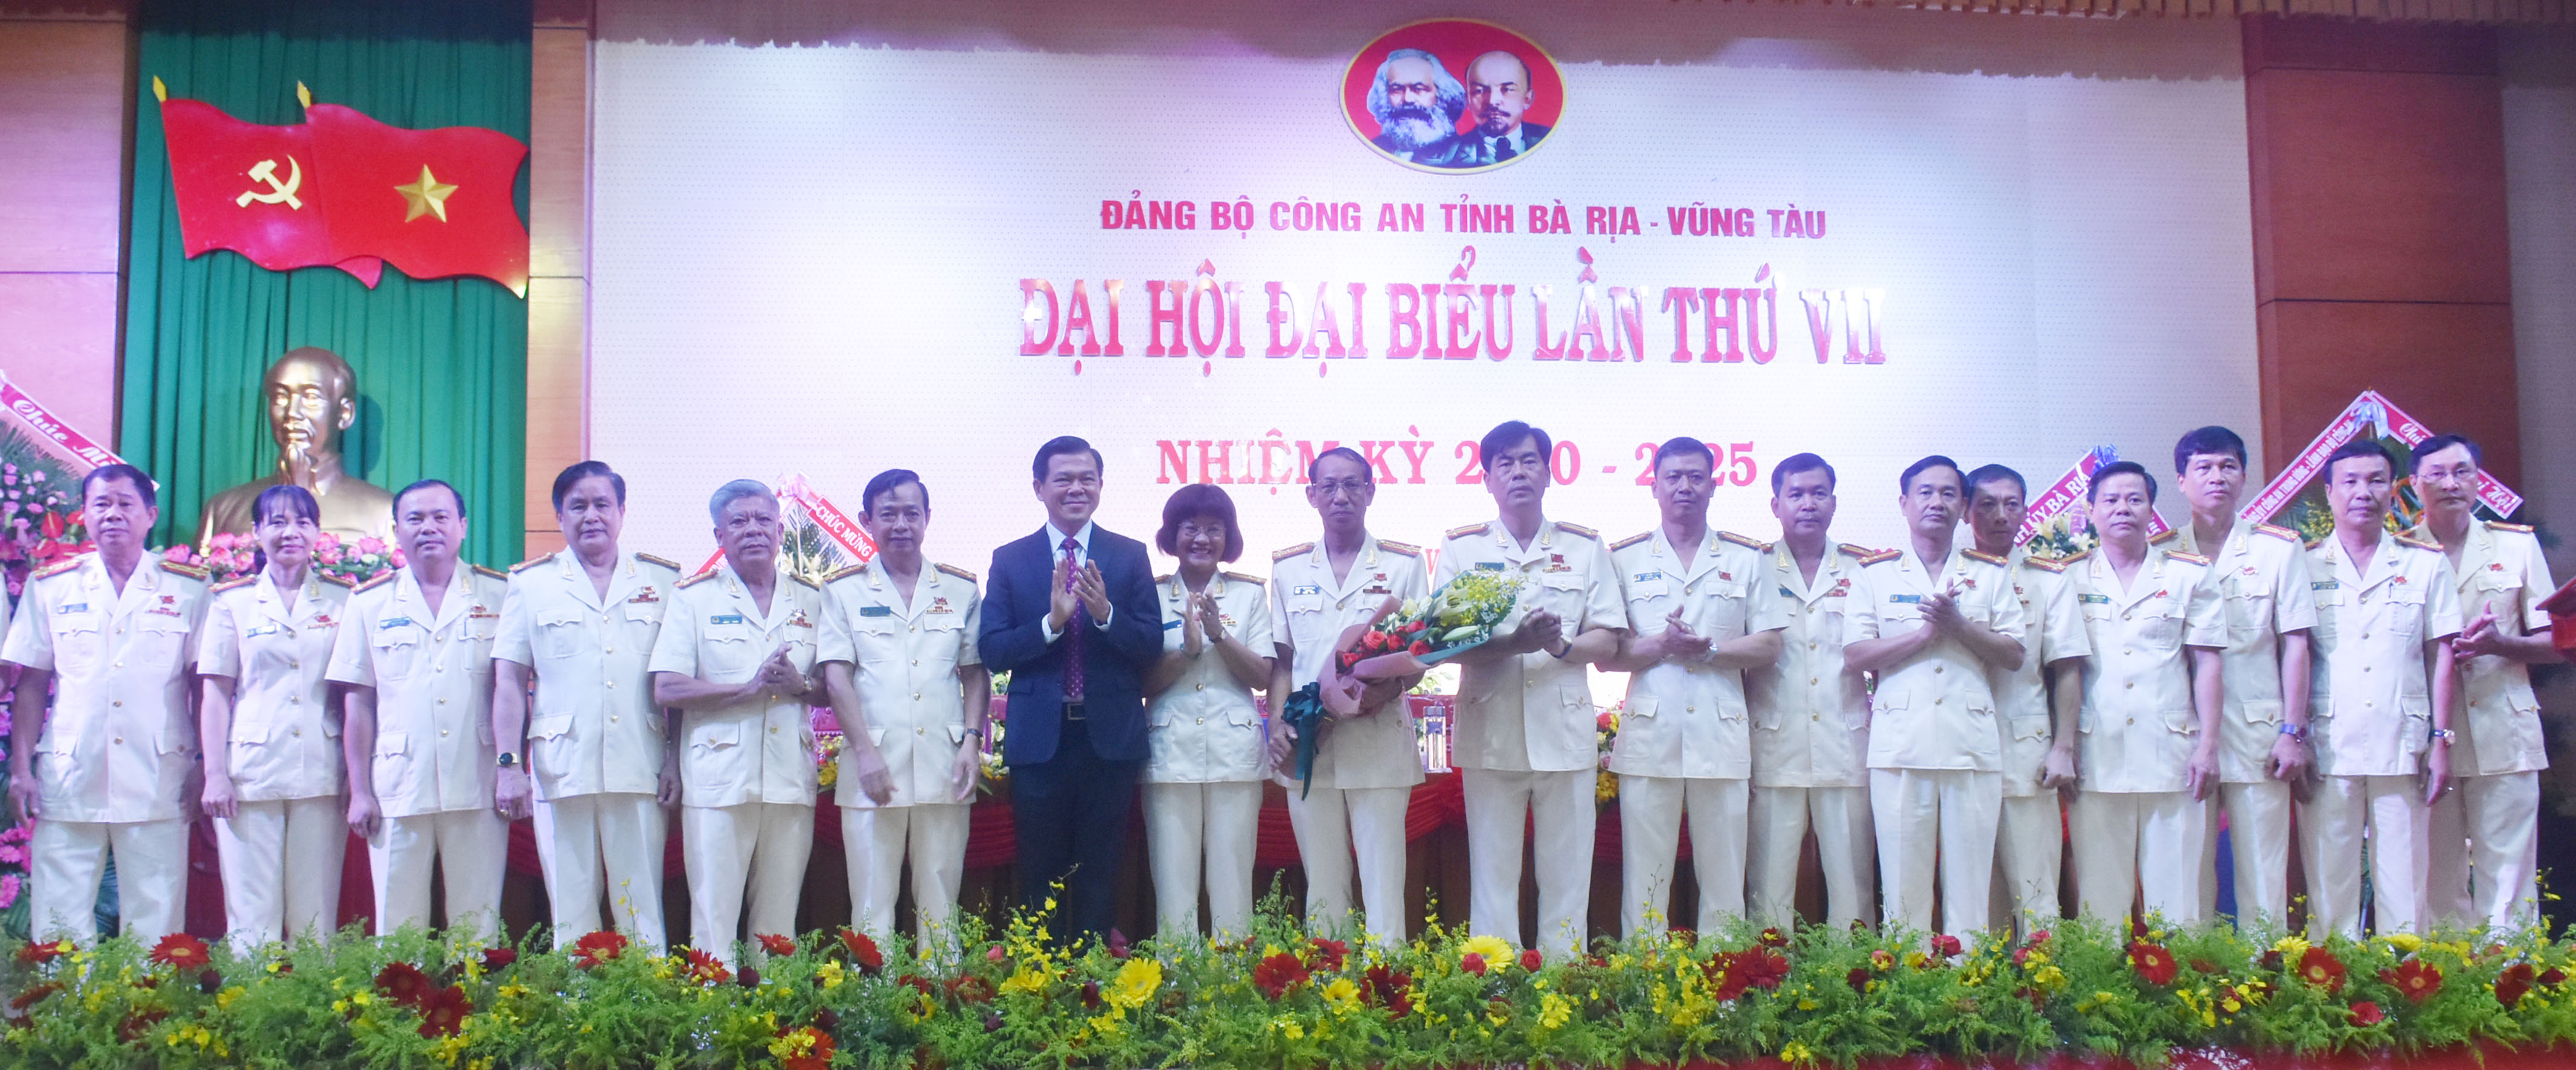 Đồng chí Nguyễn Hồng Lĩnh, Ủy viên Trung ương Đảng, Bí thư Tỉnh ủy, Chủ tịch HĐND tỉnh tặng hoa chúc mừng Ban chấp hành Đảng bộ Công an tỉnh Khóa VII, nhiệm kỳ 2020-2025.